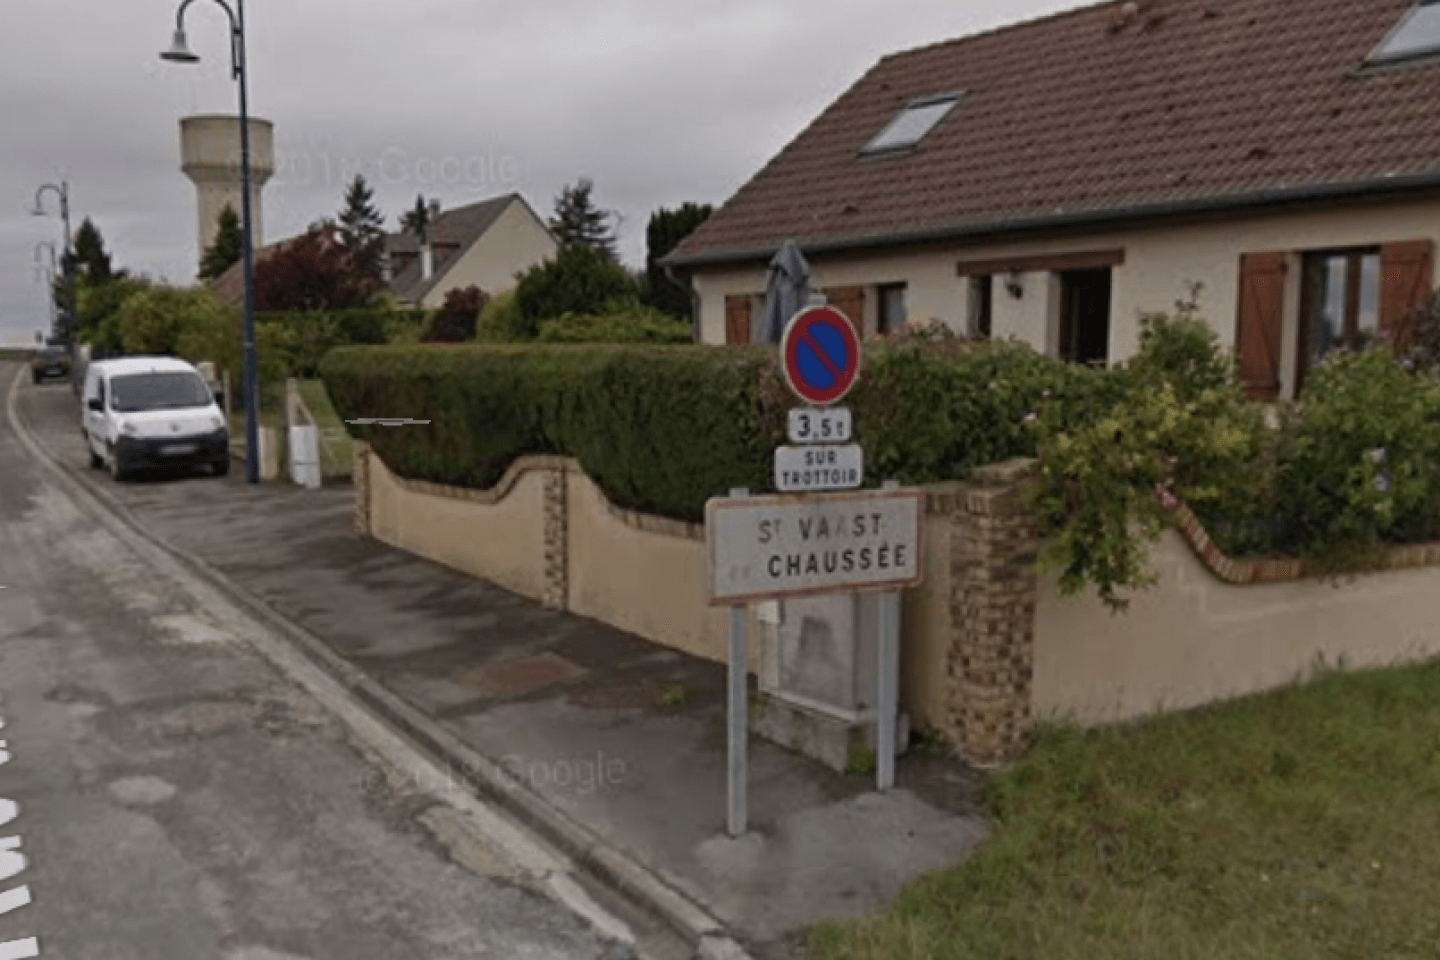 Maladie de Charcot : Santé publique France saisie après la mort de cinq personnes dans un village de la Somme